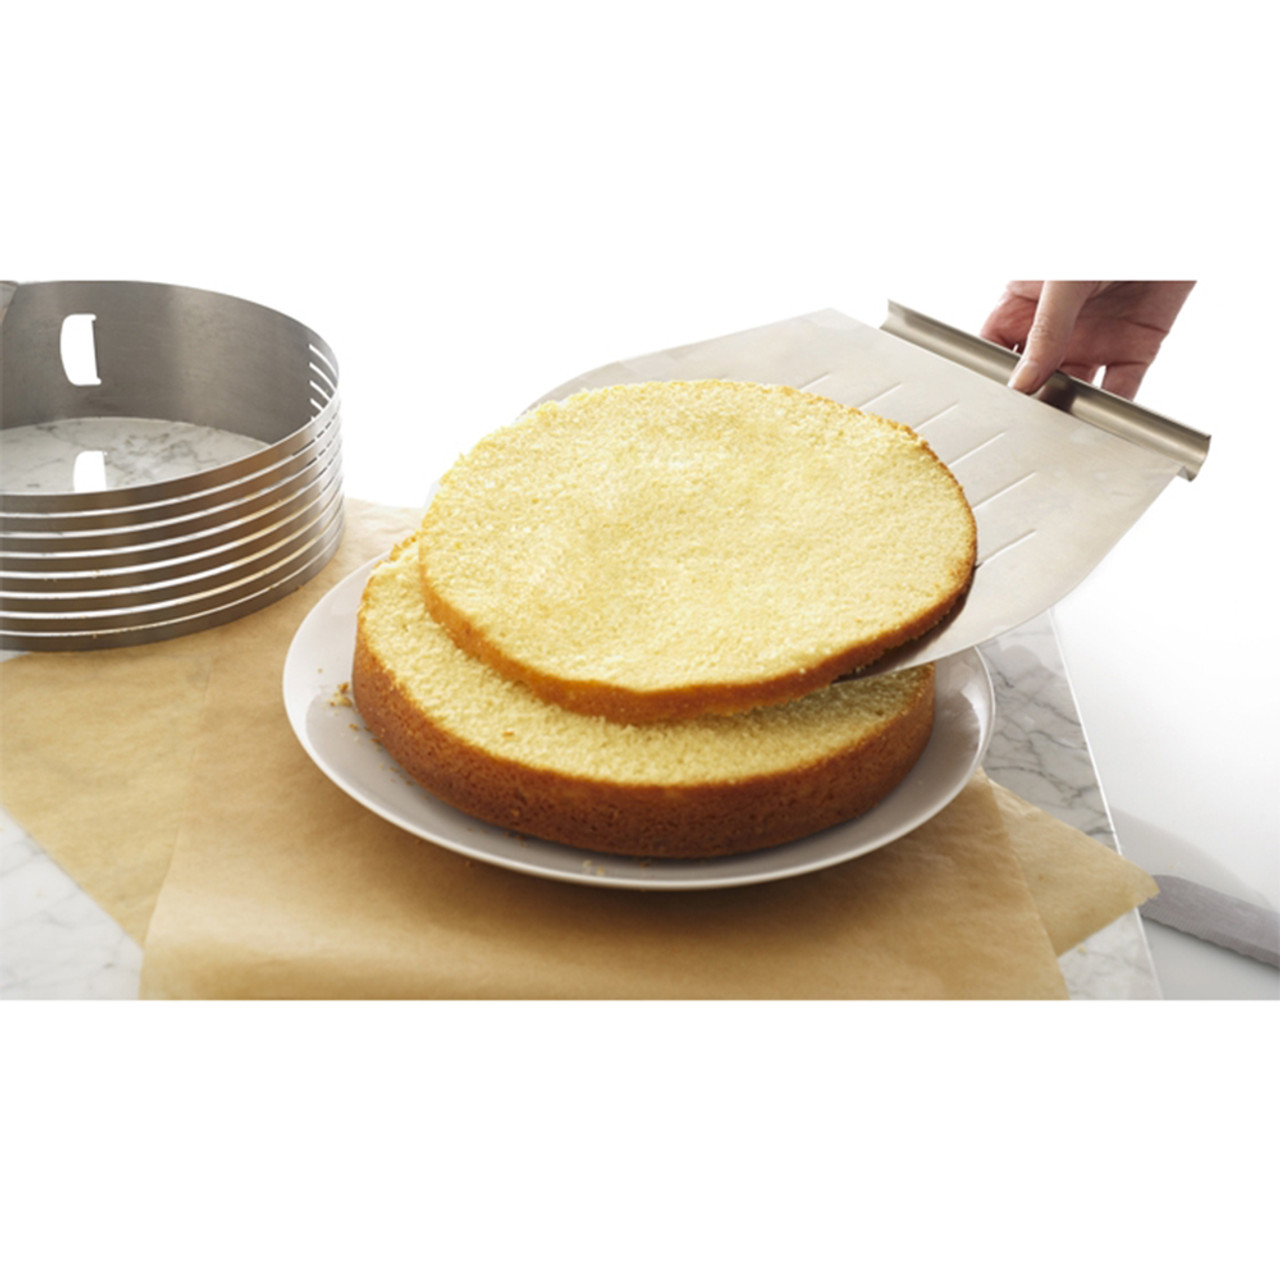 Frieling Layer Cake Slicing Kit - Baking Bites